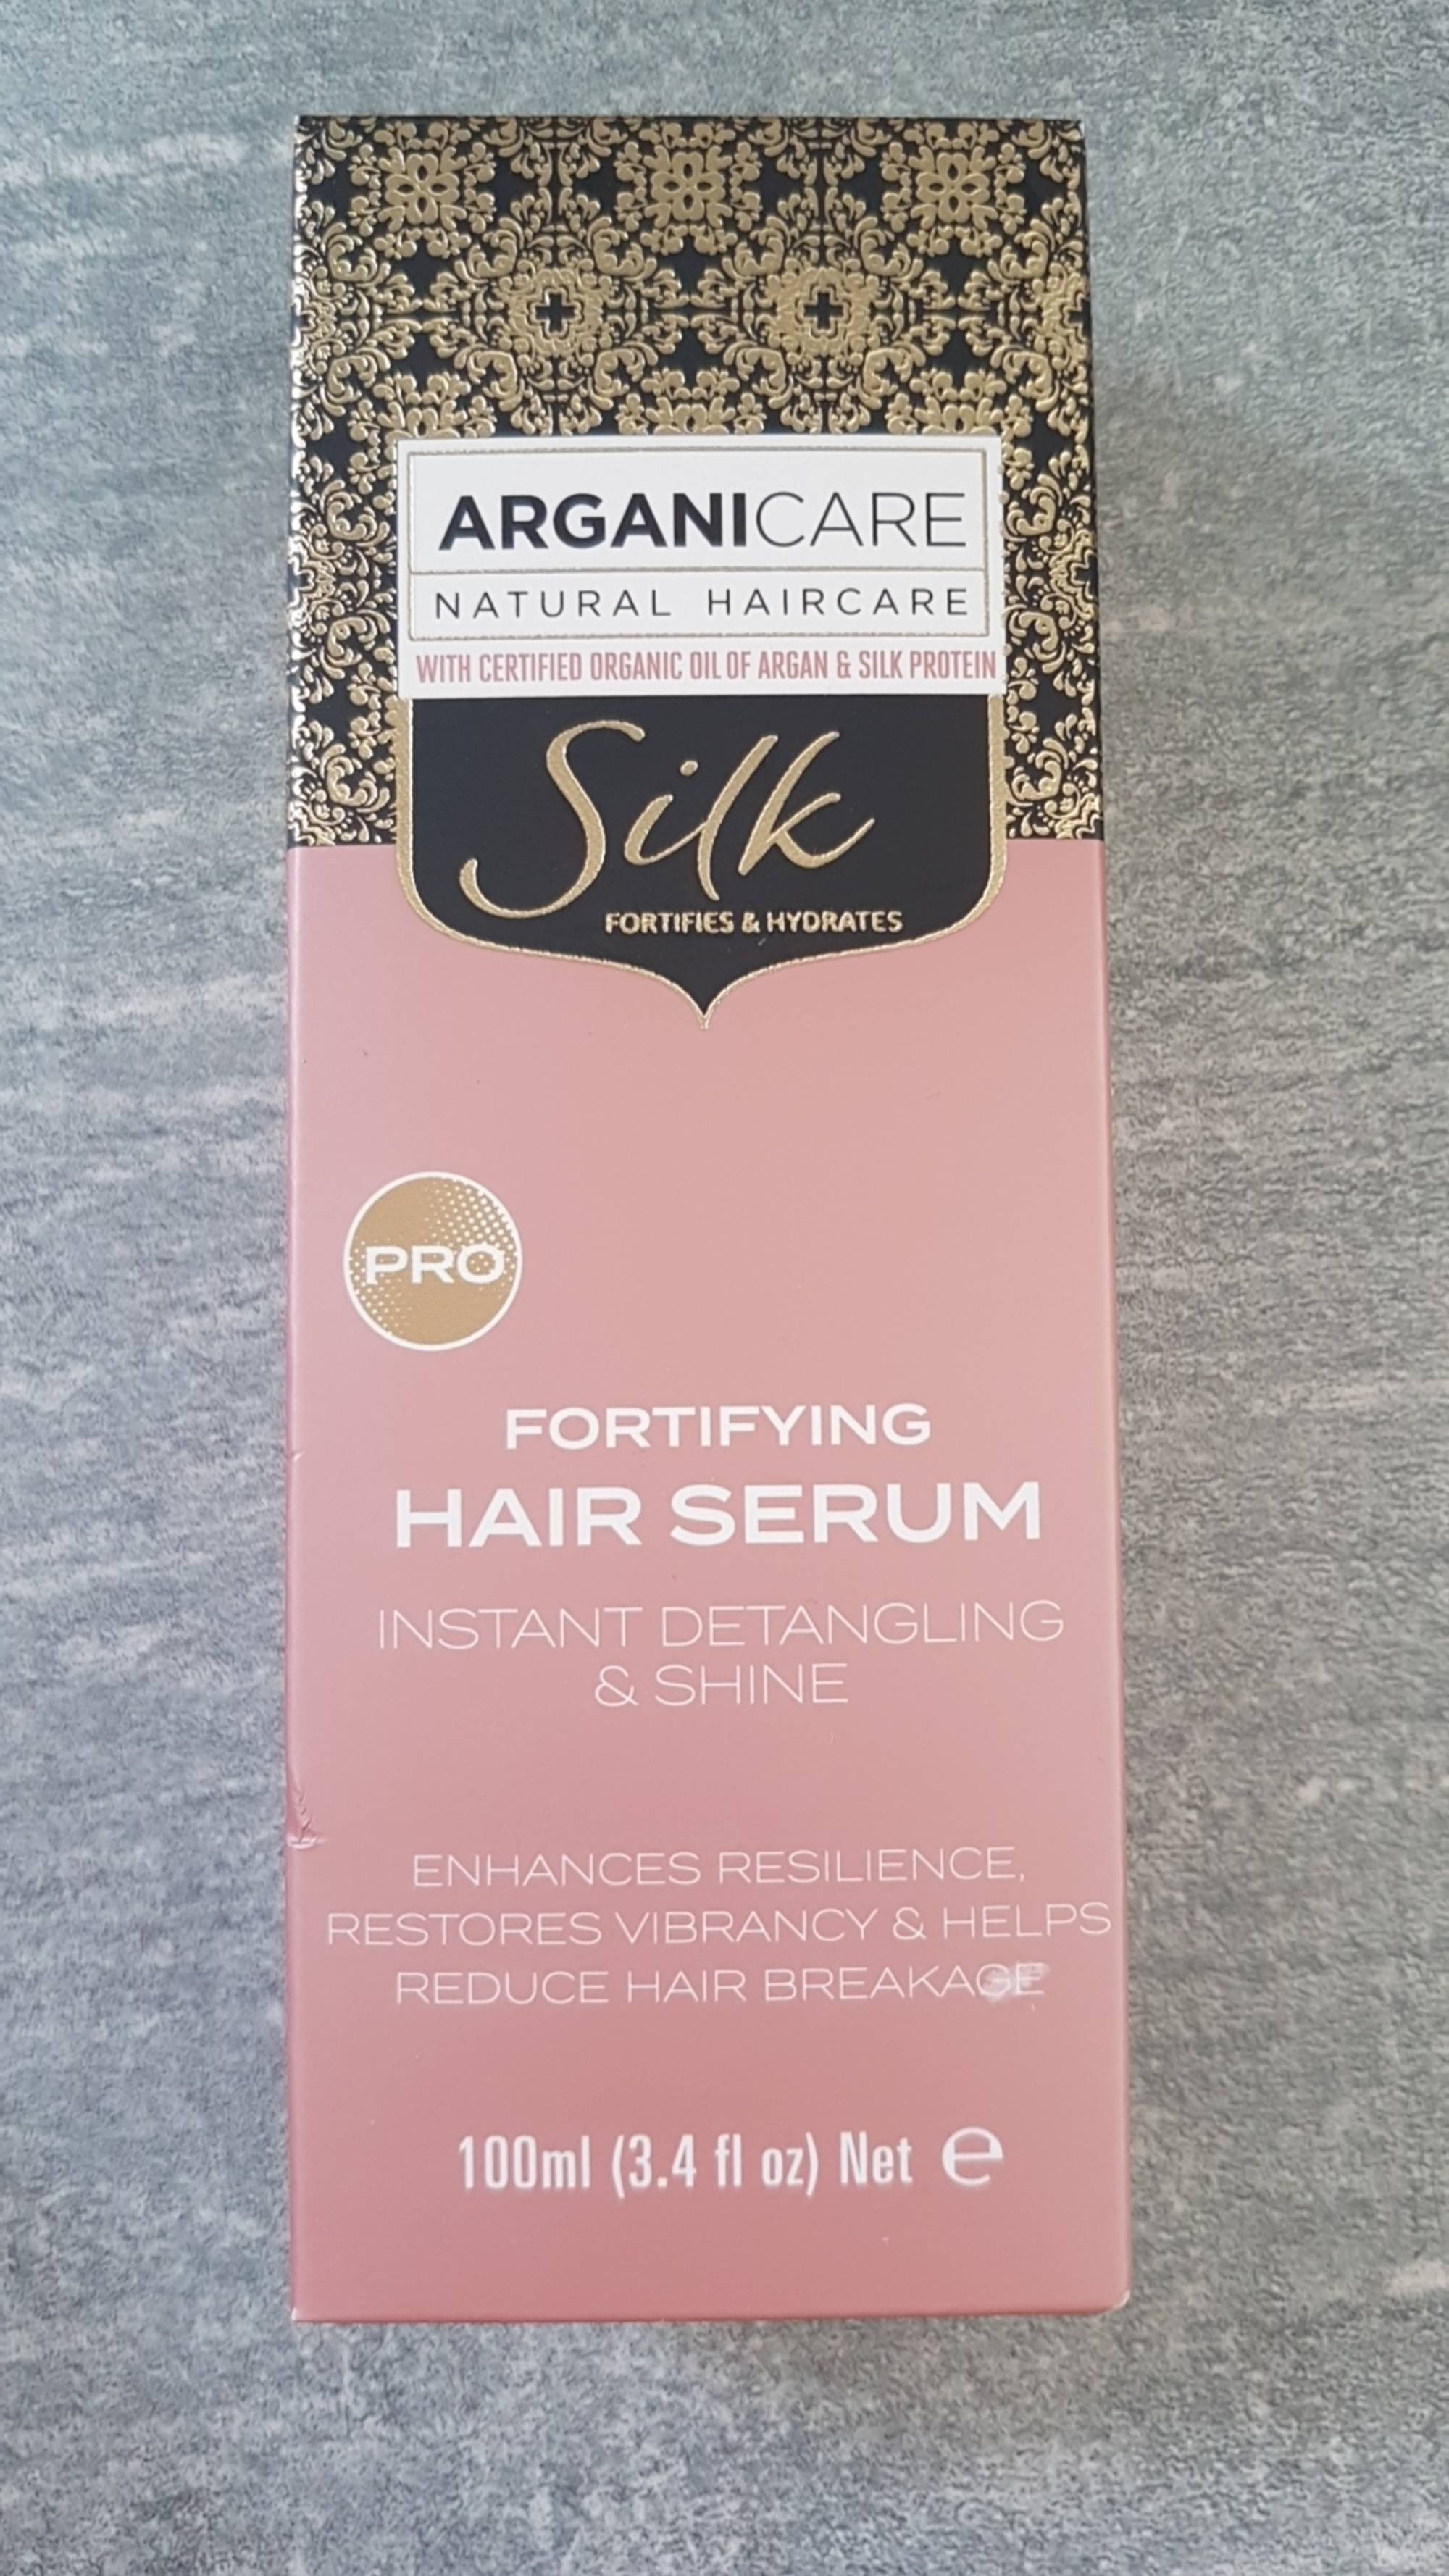 ARGANICARE - Silk - Fortifying hair serum